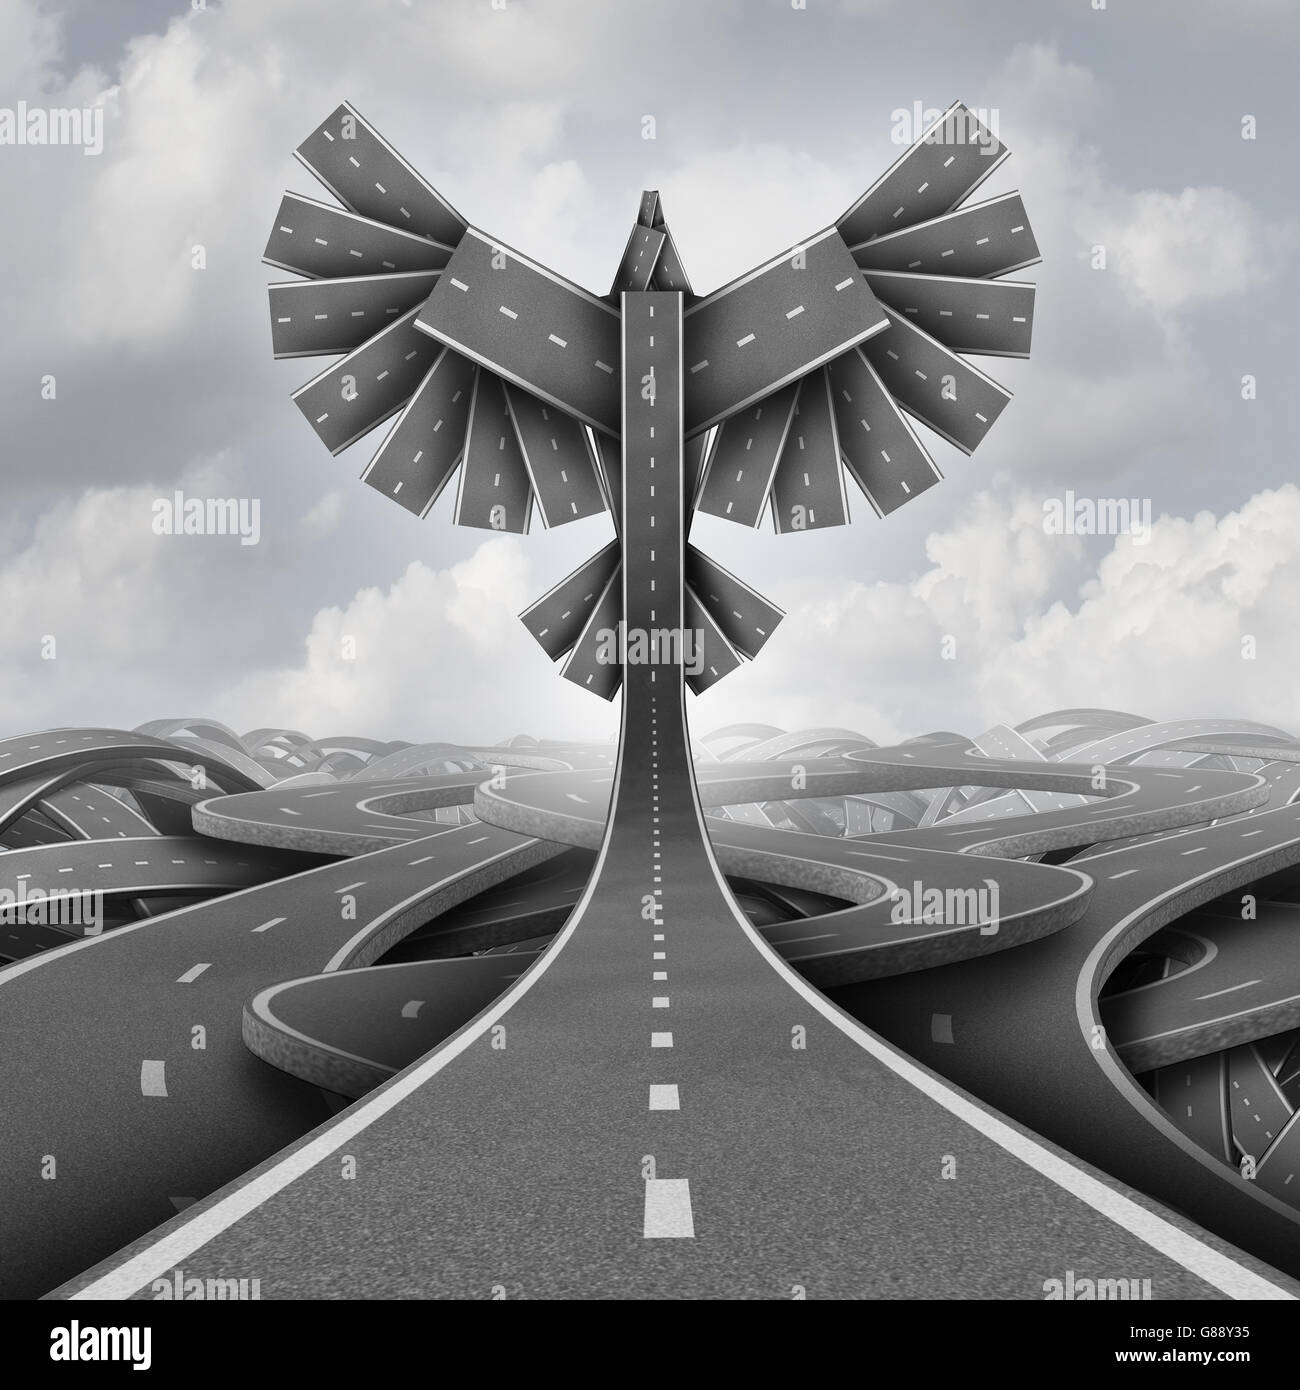 Offroad-Freiheit-Konzept als eine Gruppe von Autobahn Pfade gruppiert zusammen geformt als fliegende Vogel Flügel als Geschäft oder Leben Motivation Erfolg Symbol aufsteigend nach oben ausbrechen Verwirrung in Richtung Gelegenheit als eine 3D Darstellung. Stockfoto